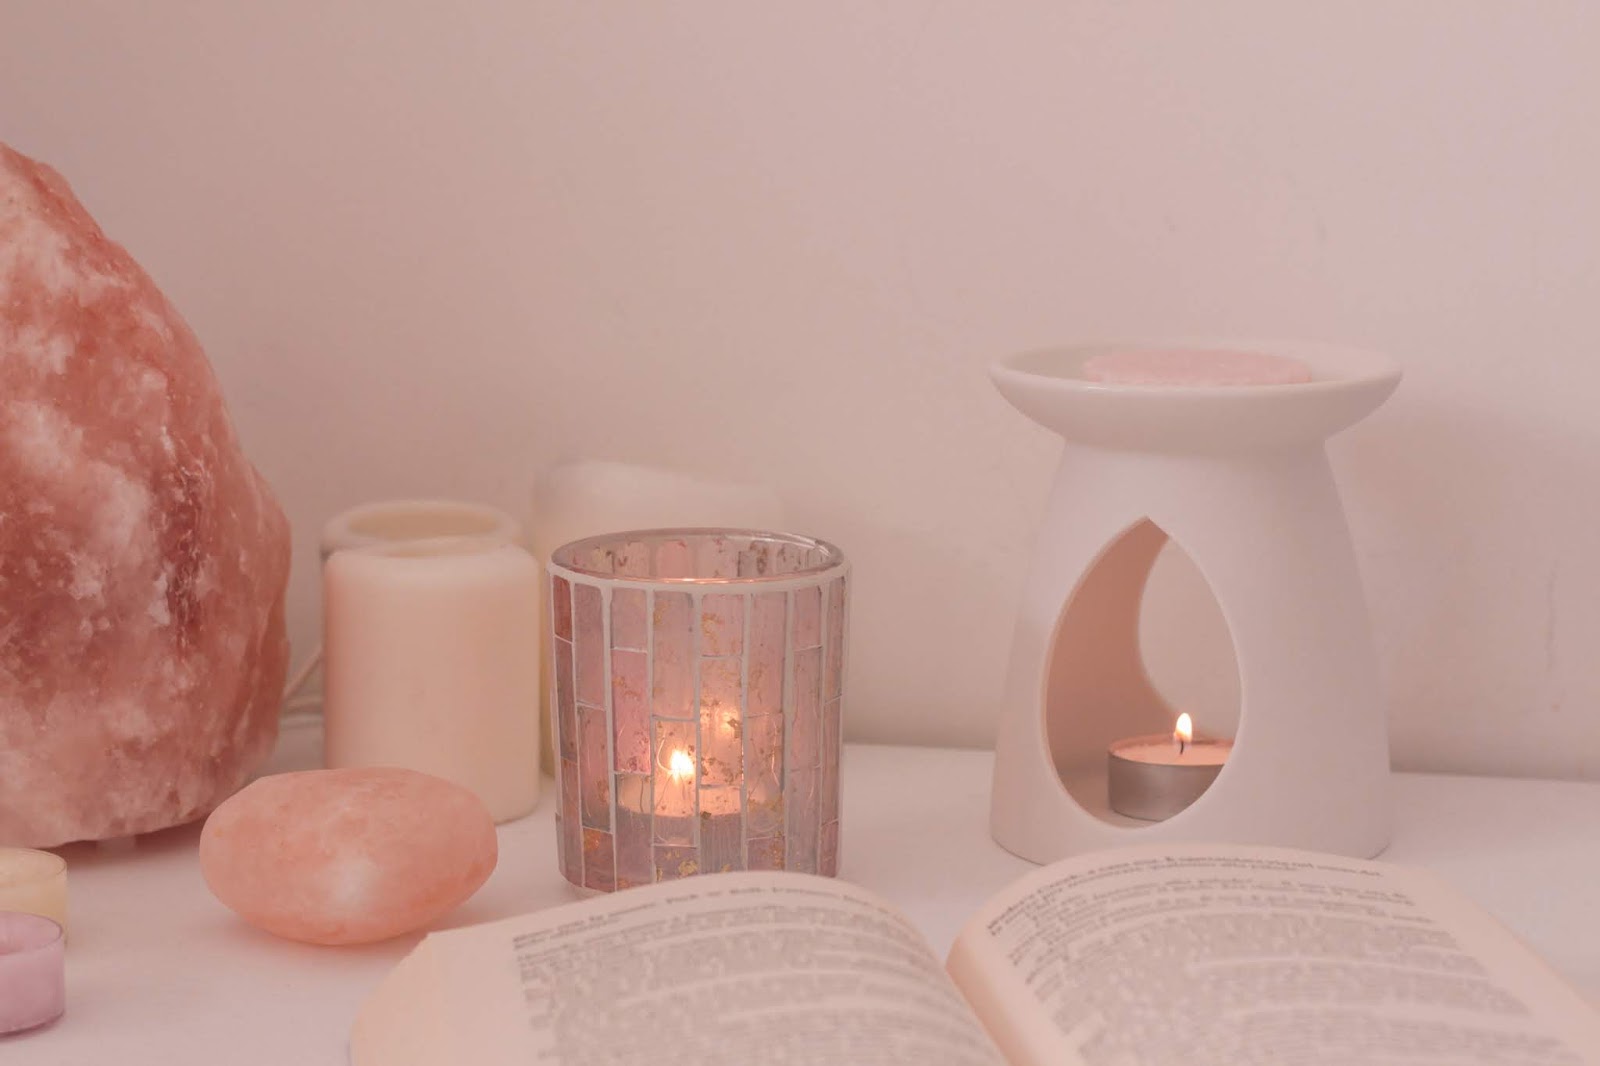 Aromaterapia e candele profumate: quali profumi favoriscono il relax?